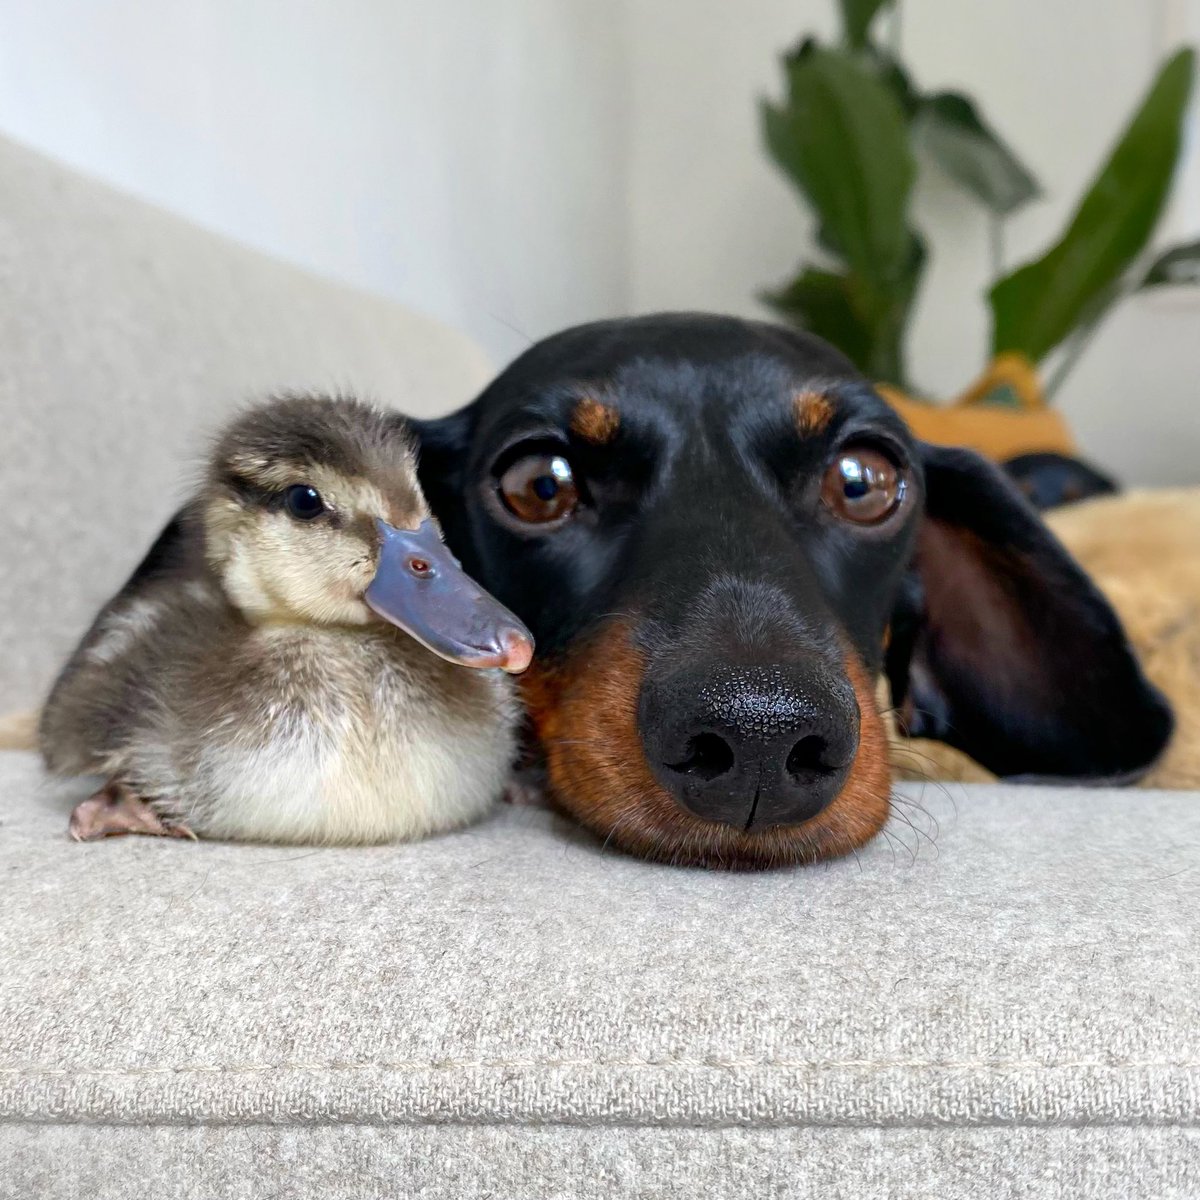 Duck & Dachshund. #unlikelyanimalfriends